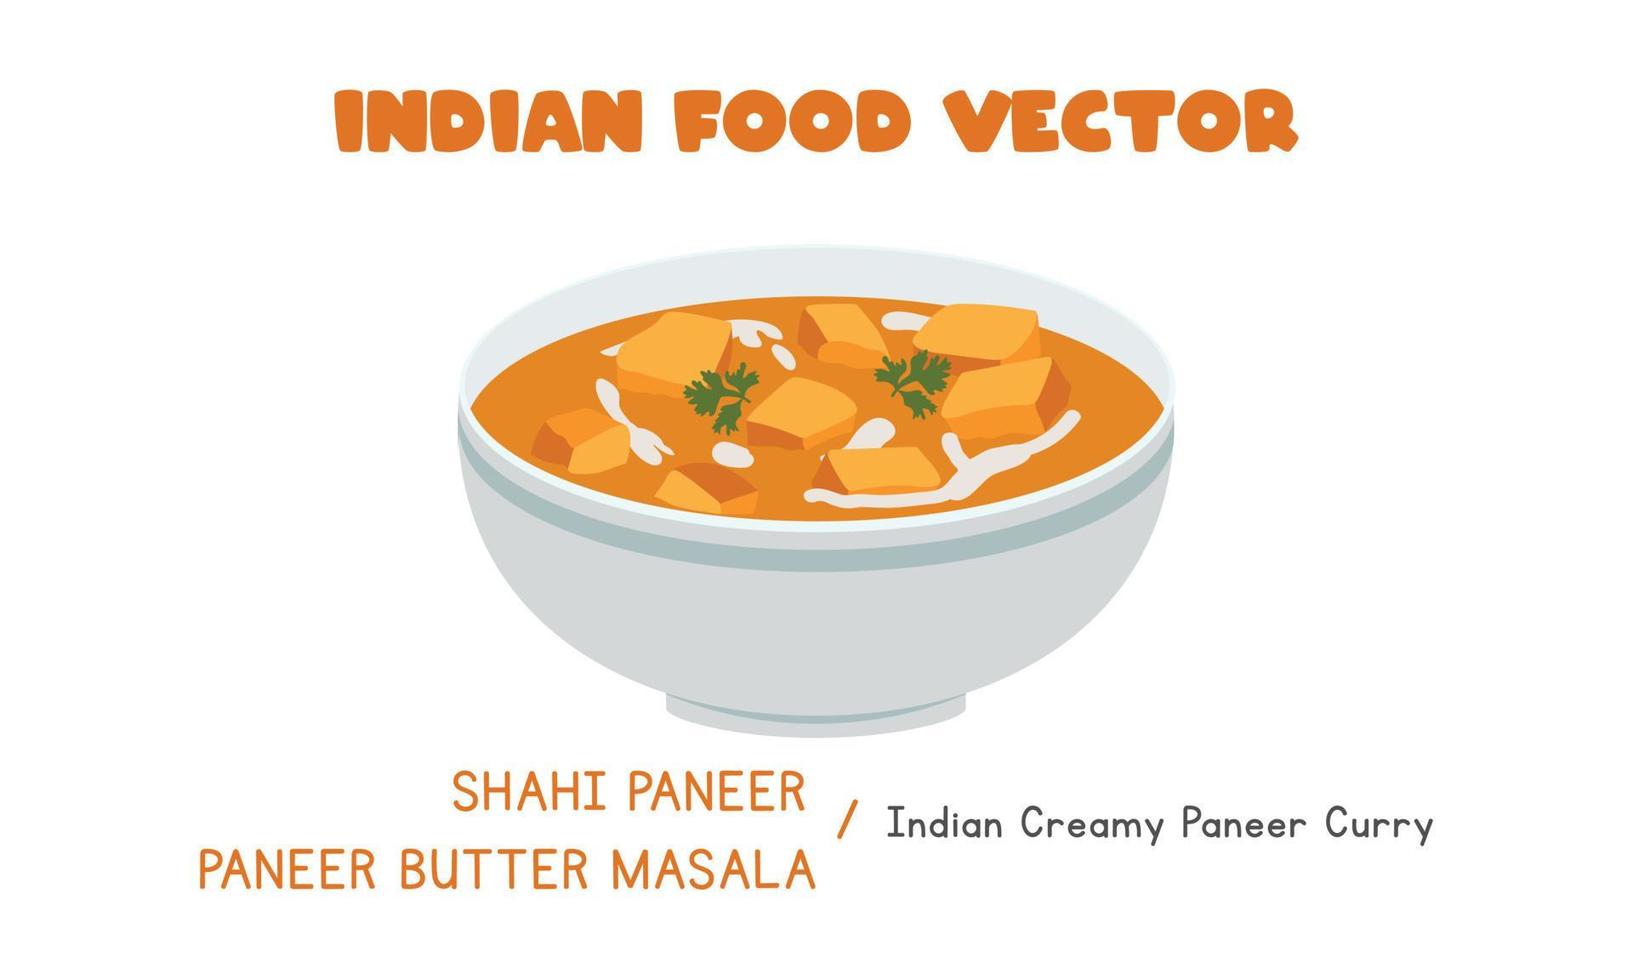 indischer shahi paneer oder paneer butter masala - indische cremige paneer curry flache vektordesignillustration, clipart-karikaturart lokalisiert auf weißem hintergrund. asiatisches Essen. indische Küche. Indisches Essen vektor